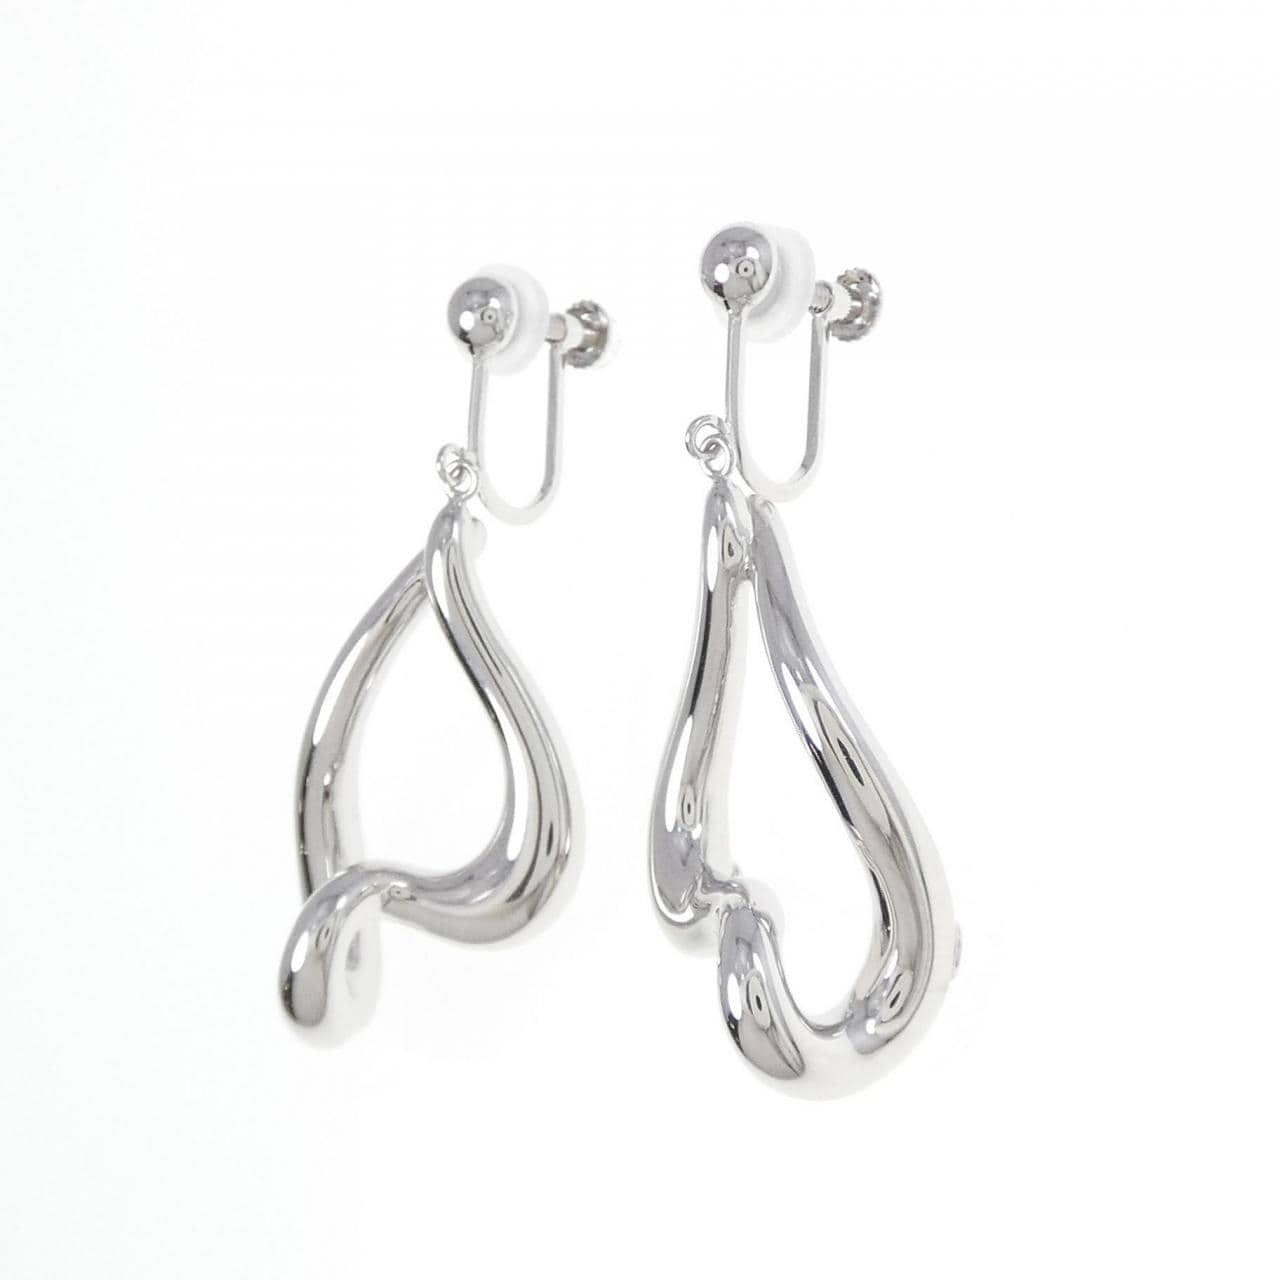 PT/K14WG/PT1000 earrings